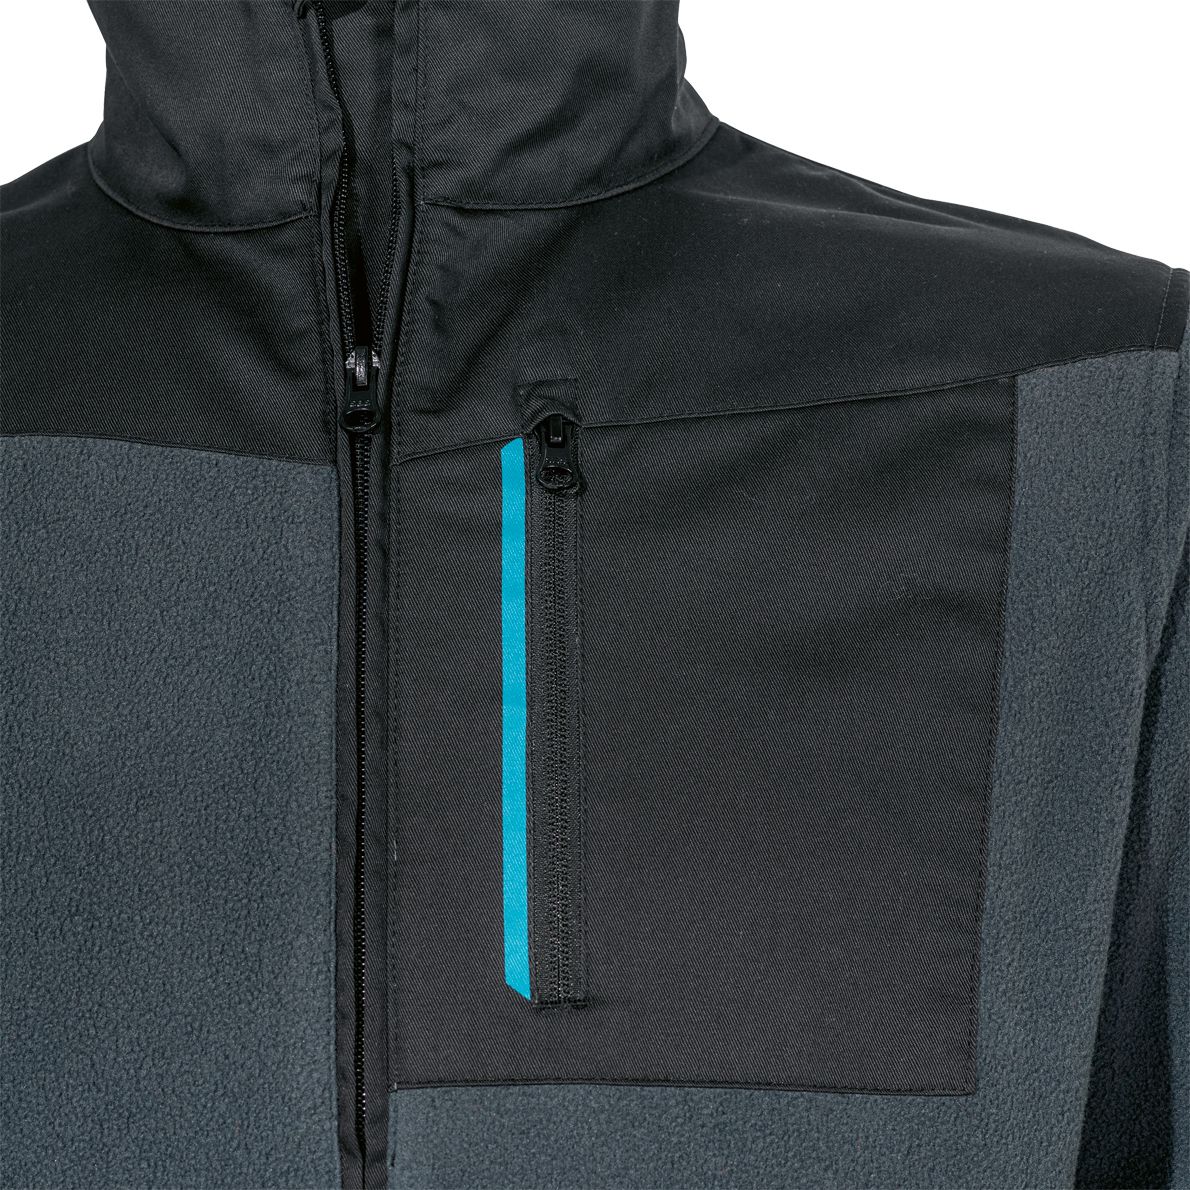 uvex tune-up Arbeitsjacke - strapazierfähige Fleece-Jacke mit Reißverschluss - warm & robust